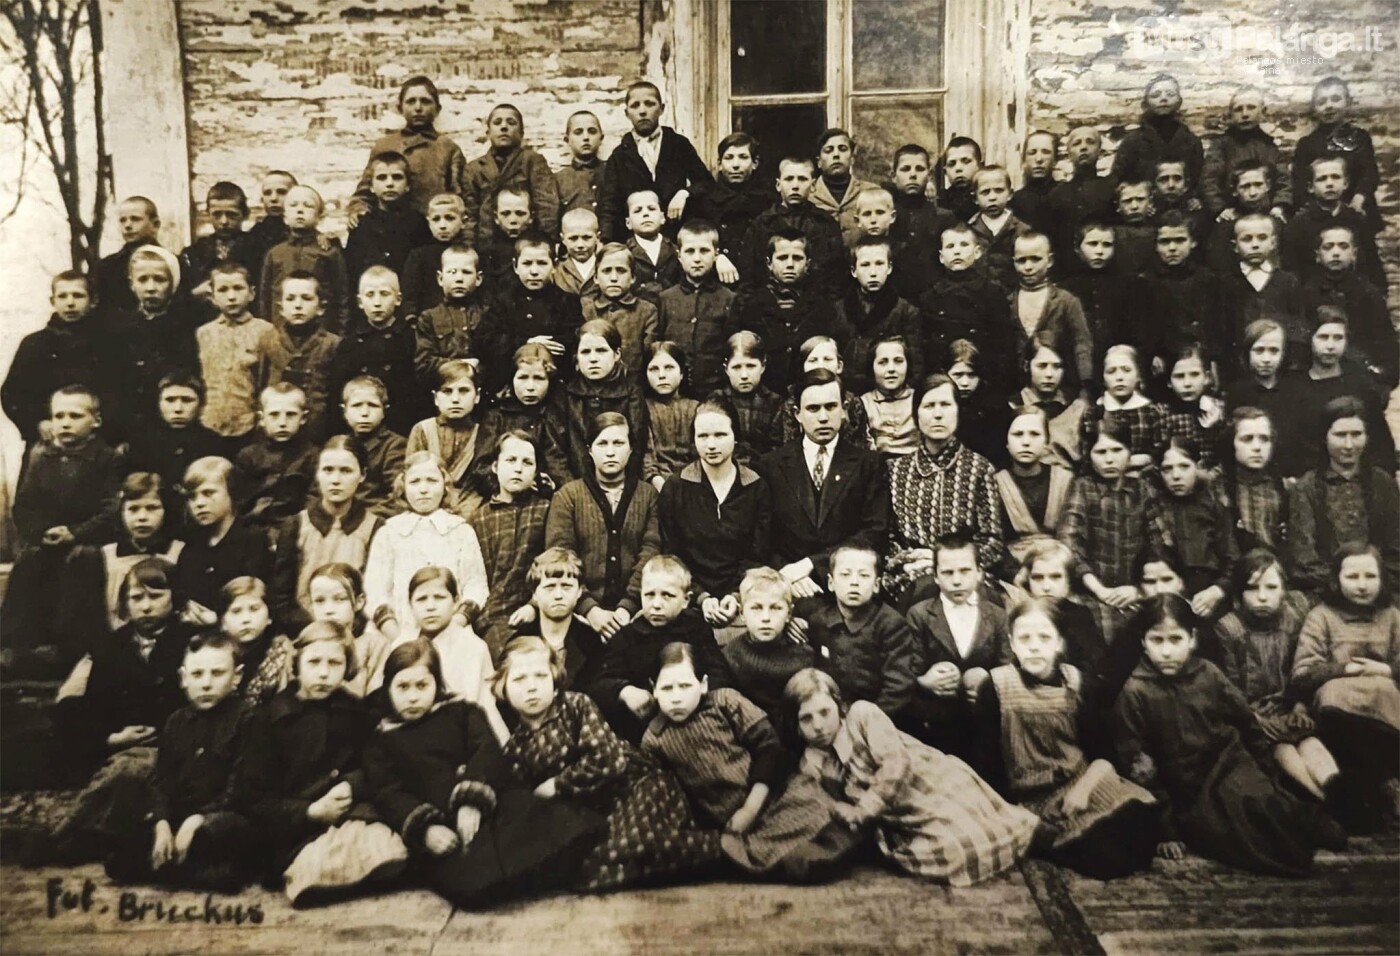 Darbėnų pradinės mokyklos mokytojai ir mokiniai prie savo mokyklos pastato. Centre – mokyklos vedėjas Mykolas Rauchas, 1927 m. Elijahu Bruckaus nuo...